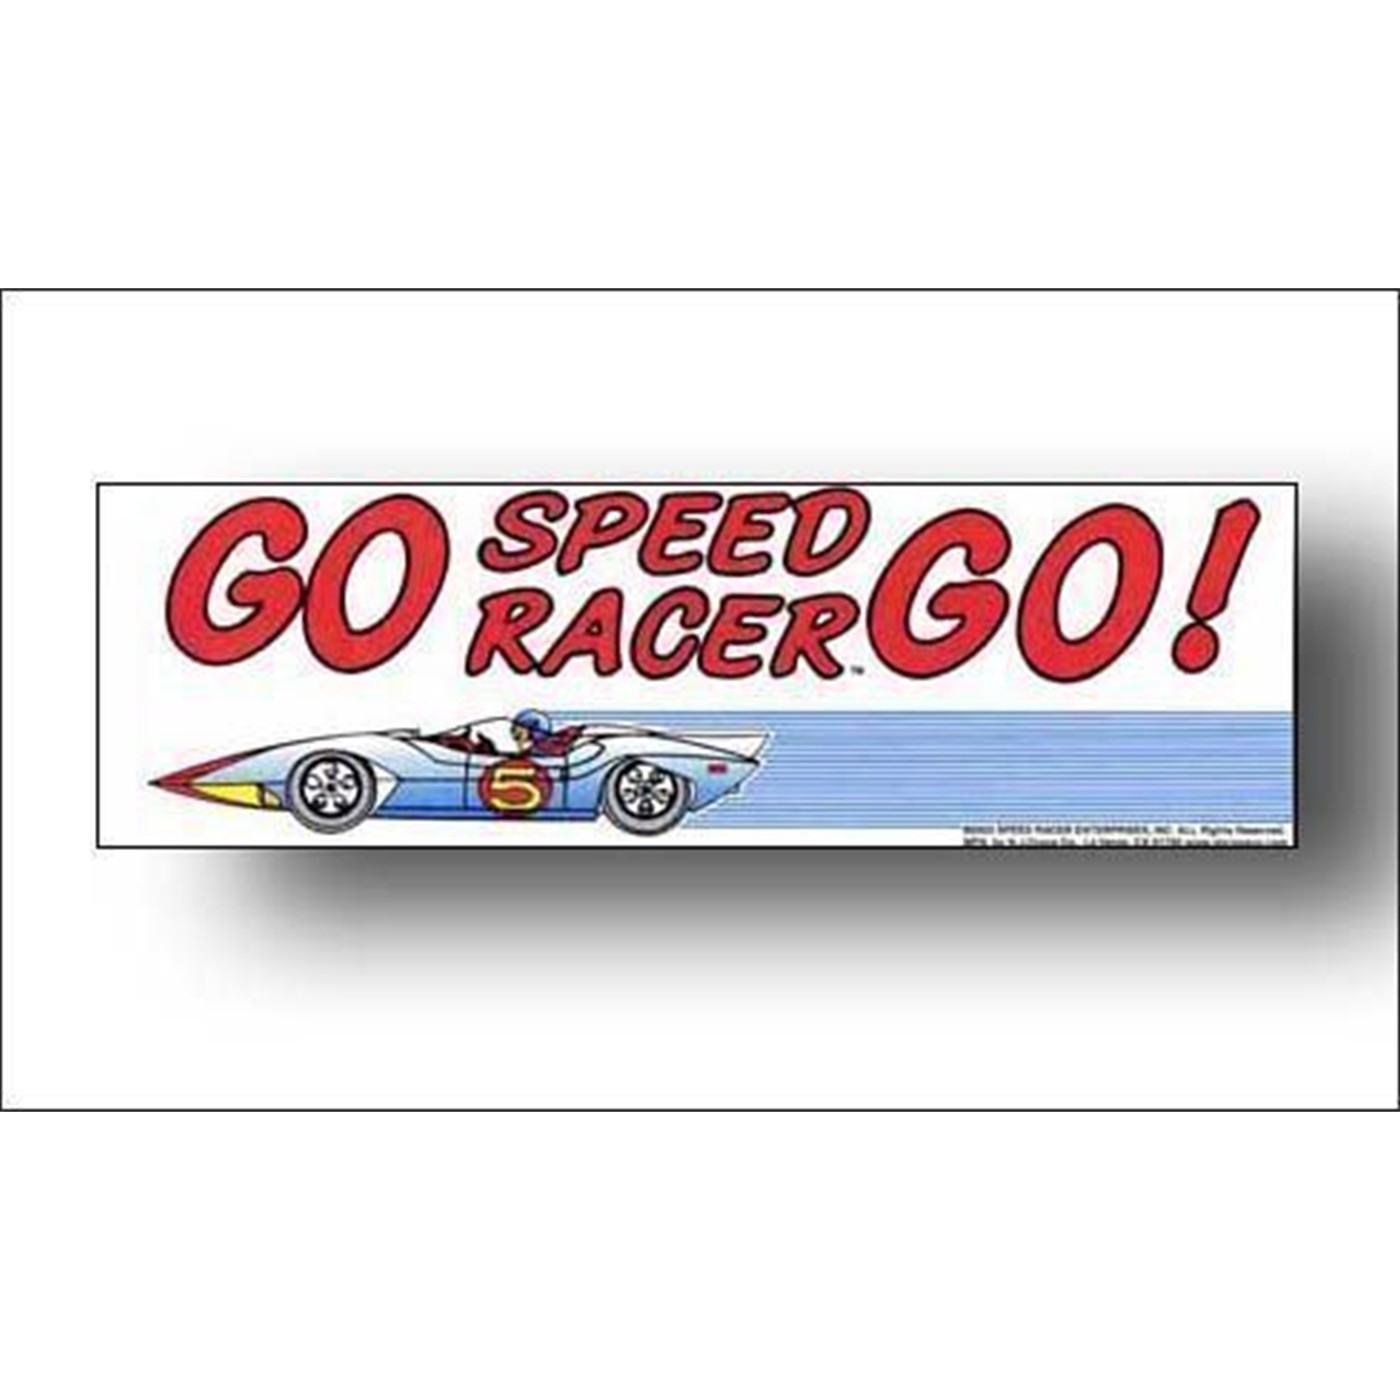 Speed Racer Go Speed! Bumper Sticker